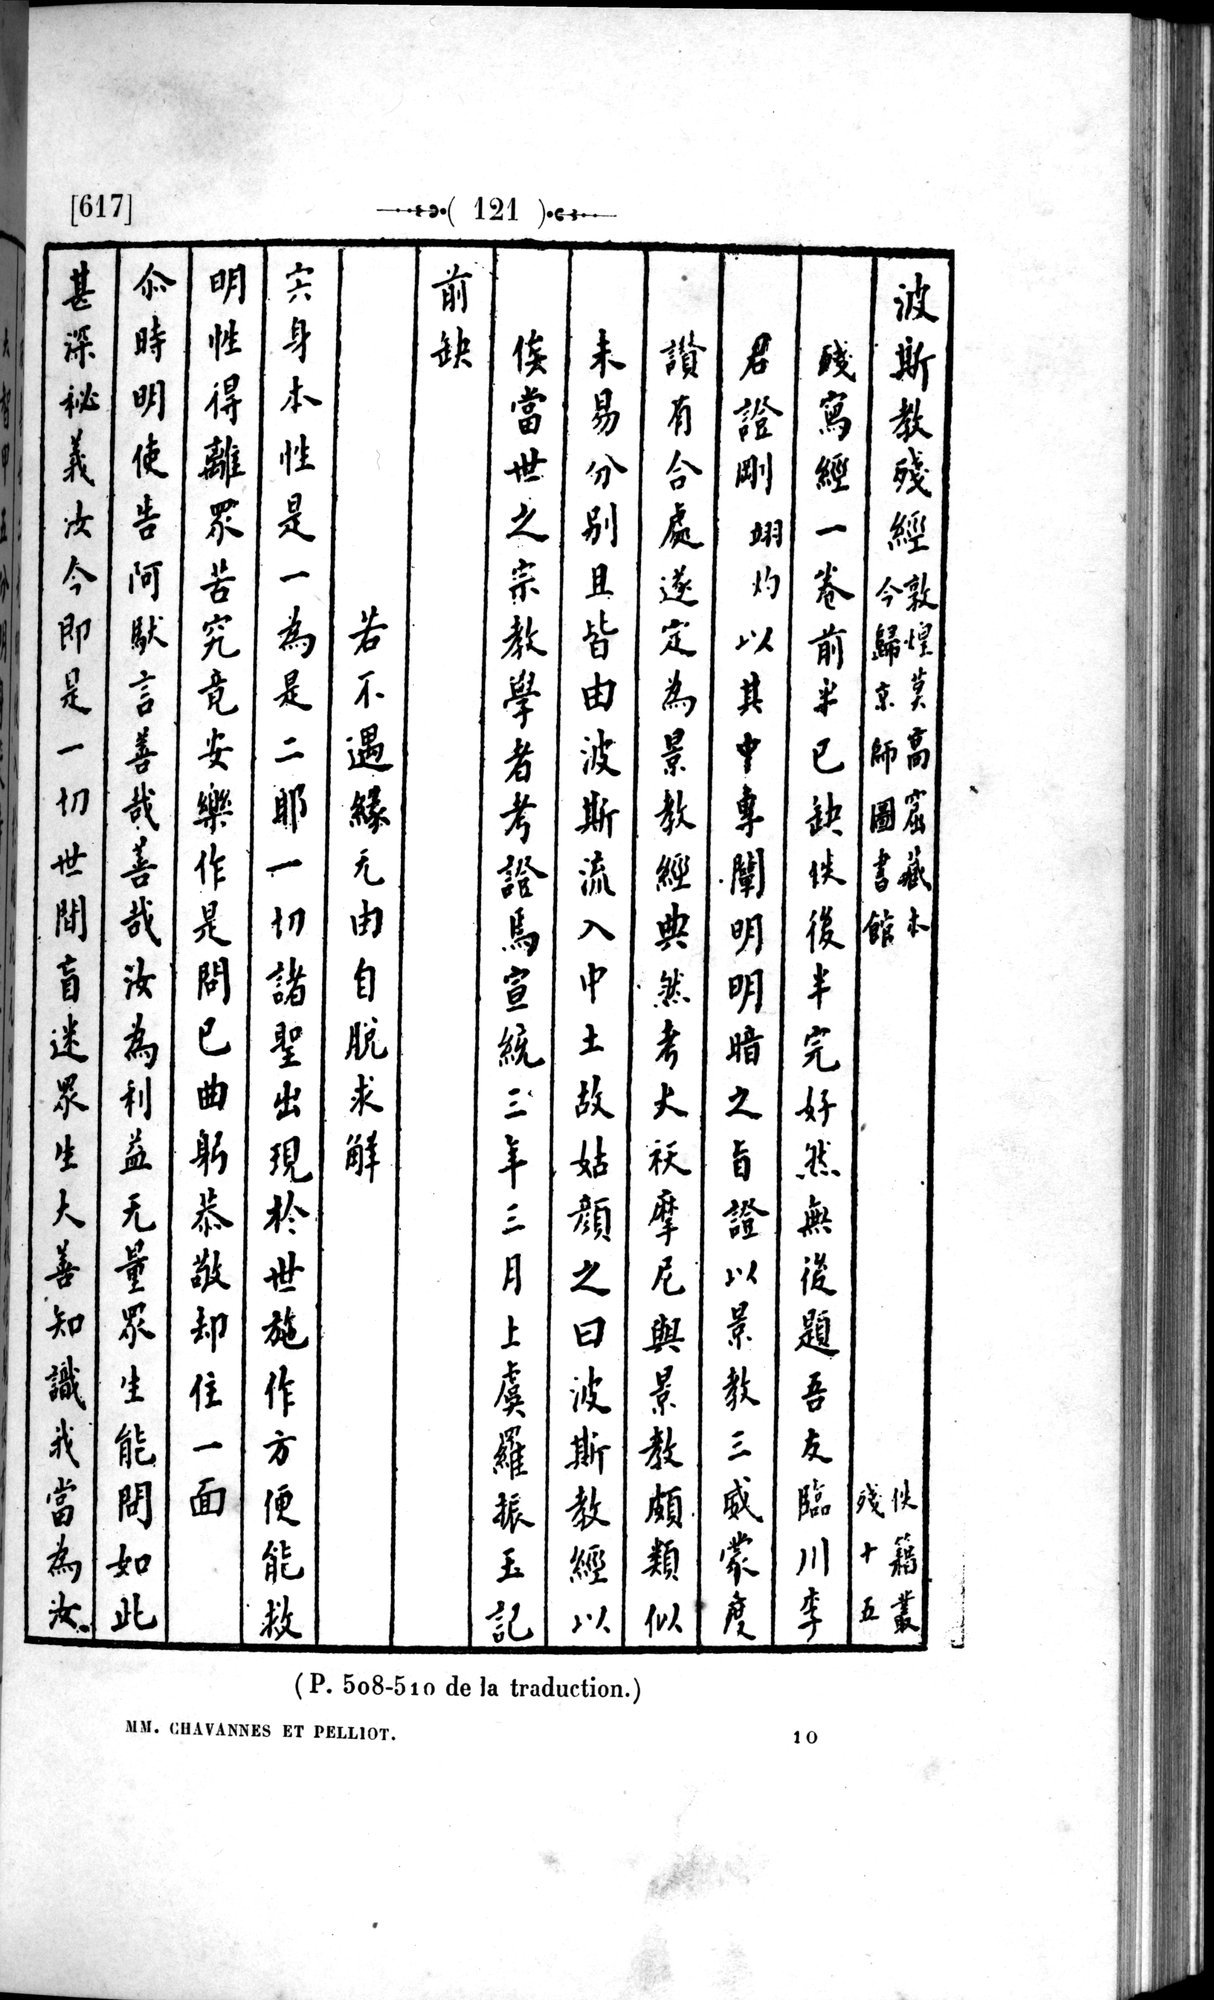 Un traité manichéen retrouvé en Chine : vol.1 / 131 ページ（白黒高解像度画像）